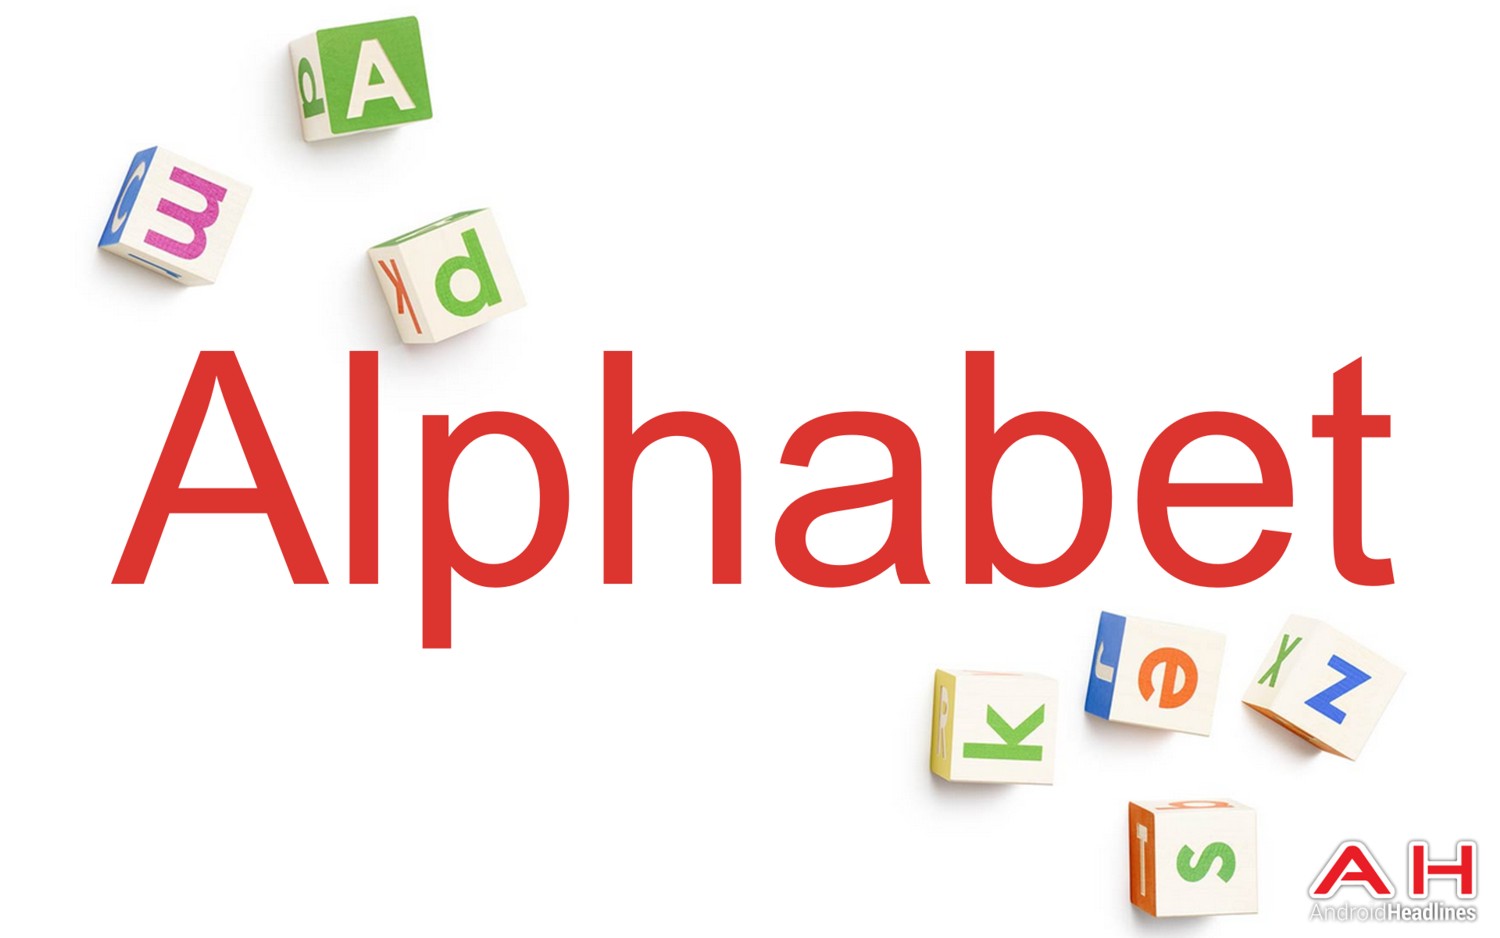 Alphabet/Google se centra en la IA para afianzarse y dominar la experiencia del usuario digital